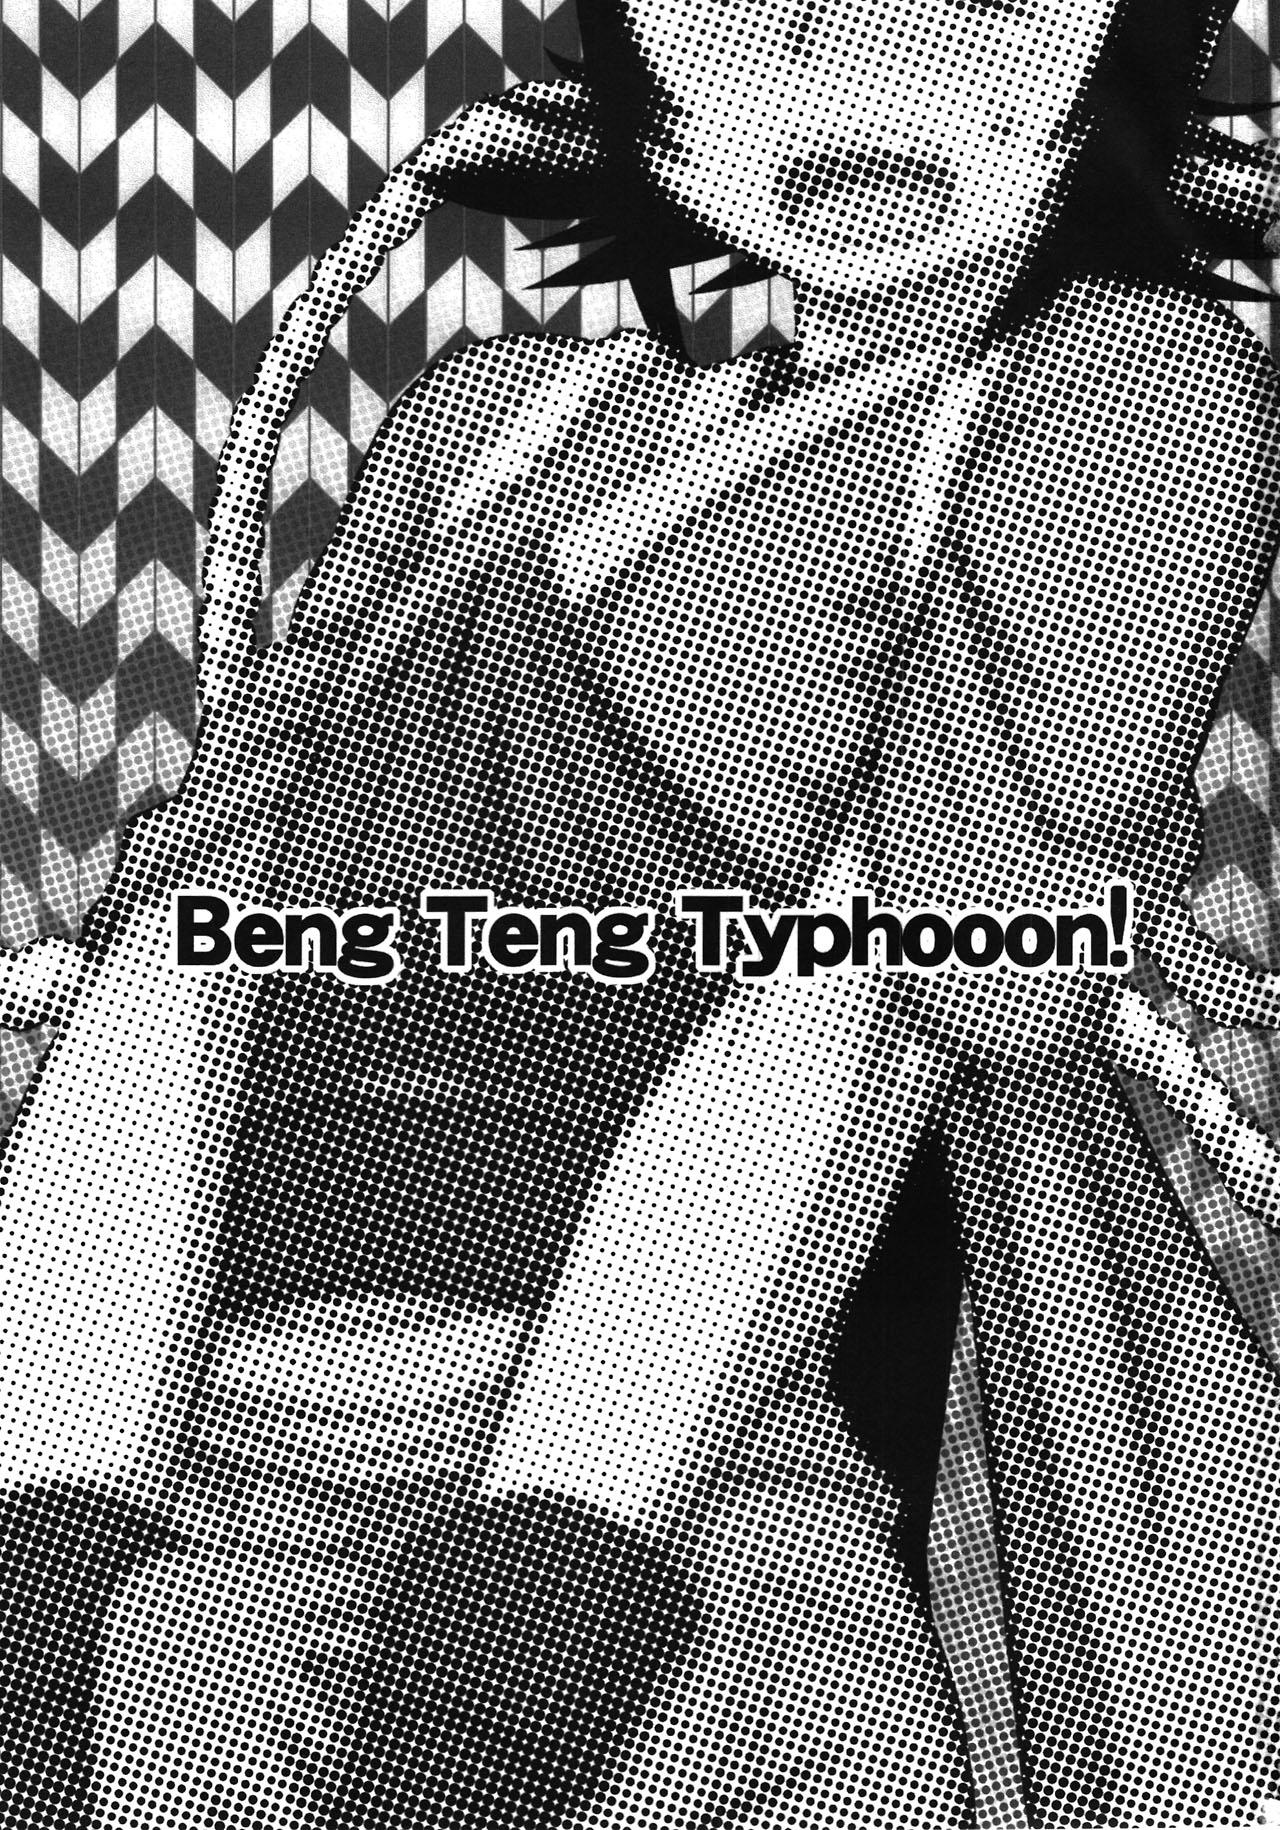 Cumshots Beng Teng Typhooon! - Rurouni kenshin Puba - Page 3